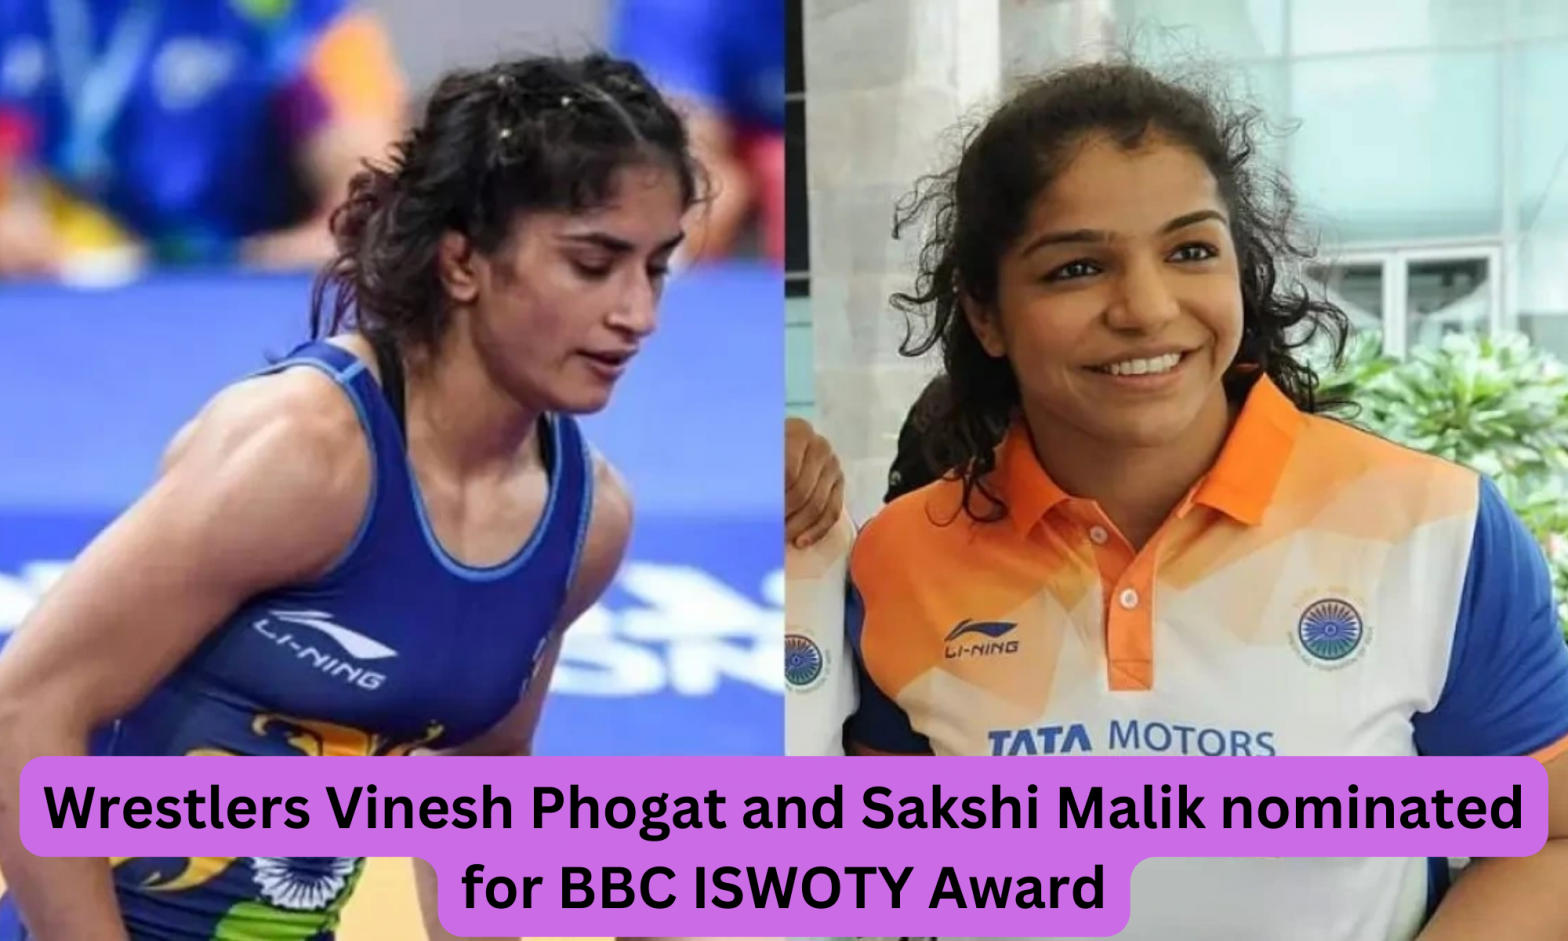 Vinesh Phogat and Sakshi Malik nominated for BBC ISWOTY Award